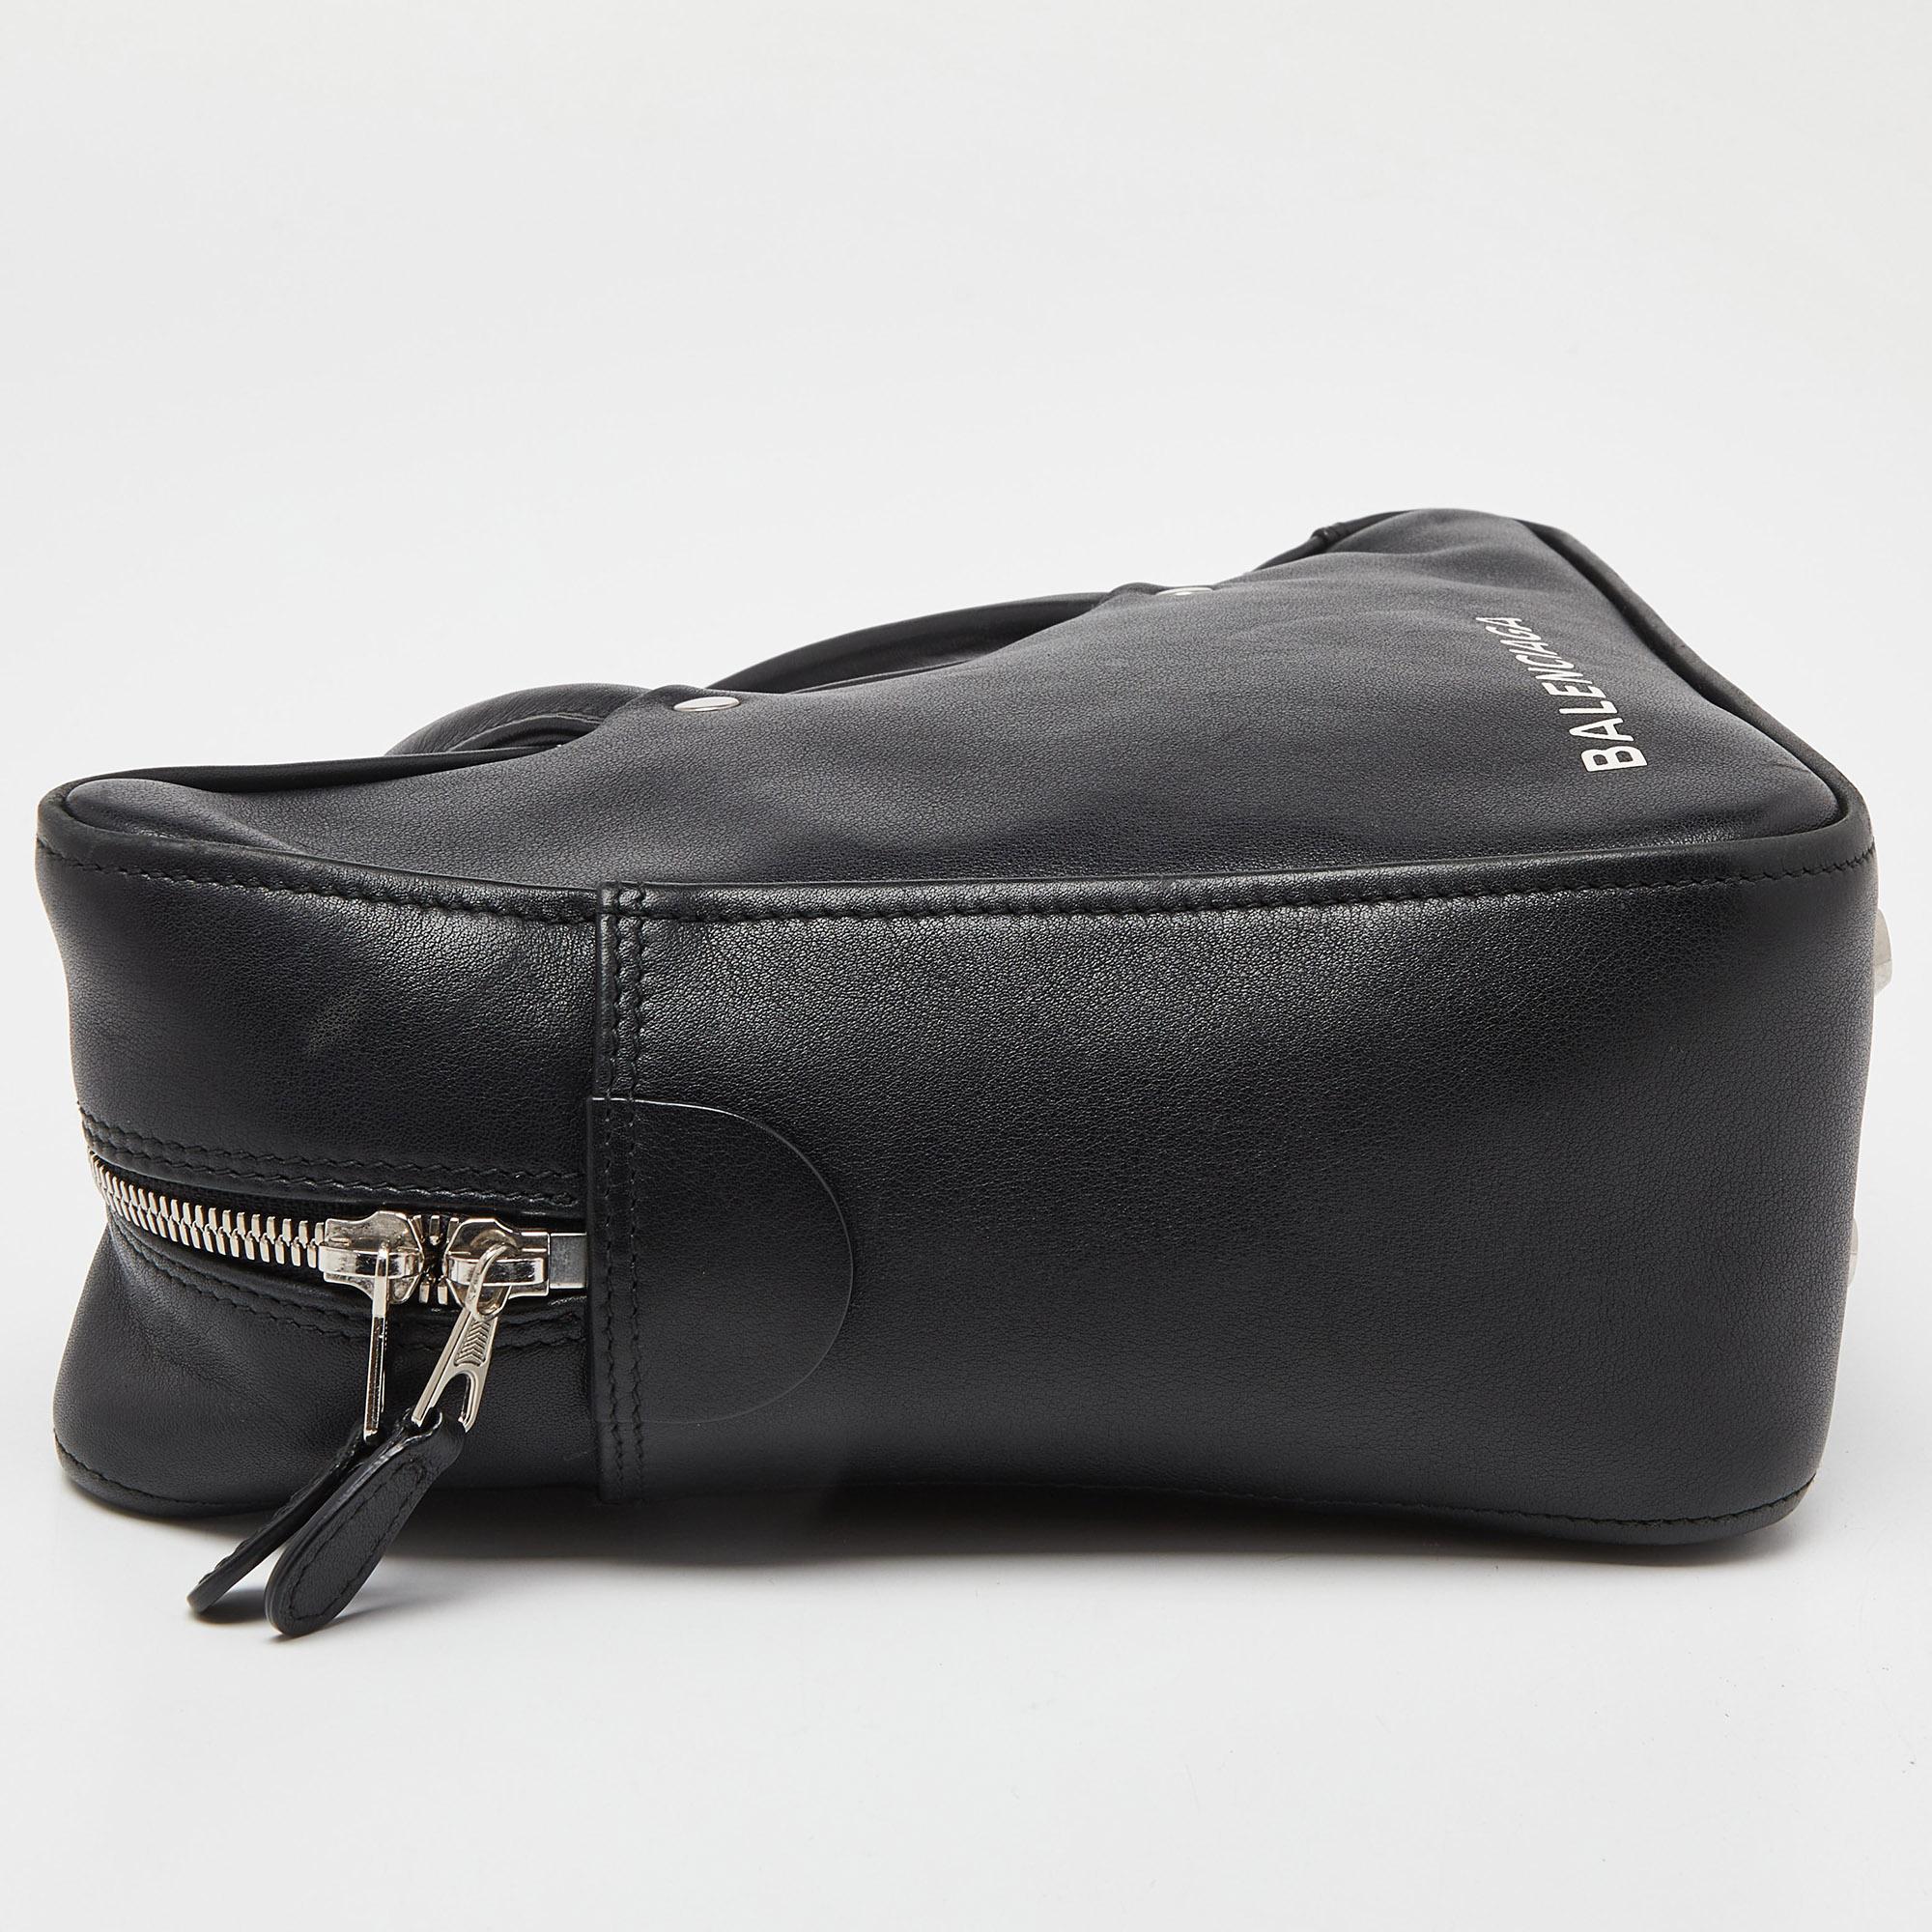 Balenciaga Black Leather Small Triangle Duffle Bag For Sale 1